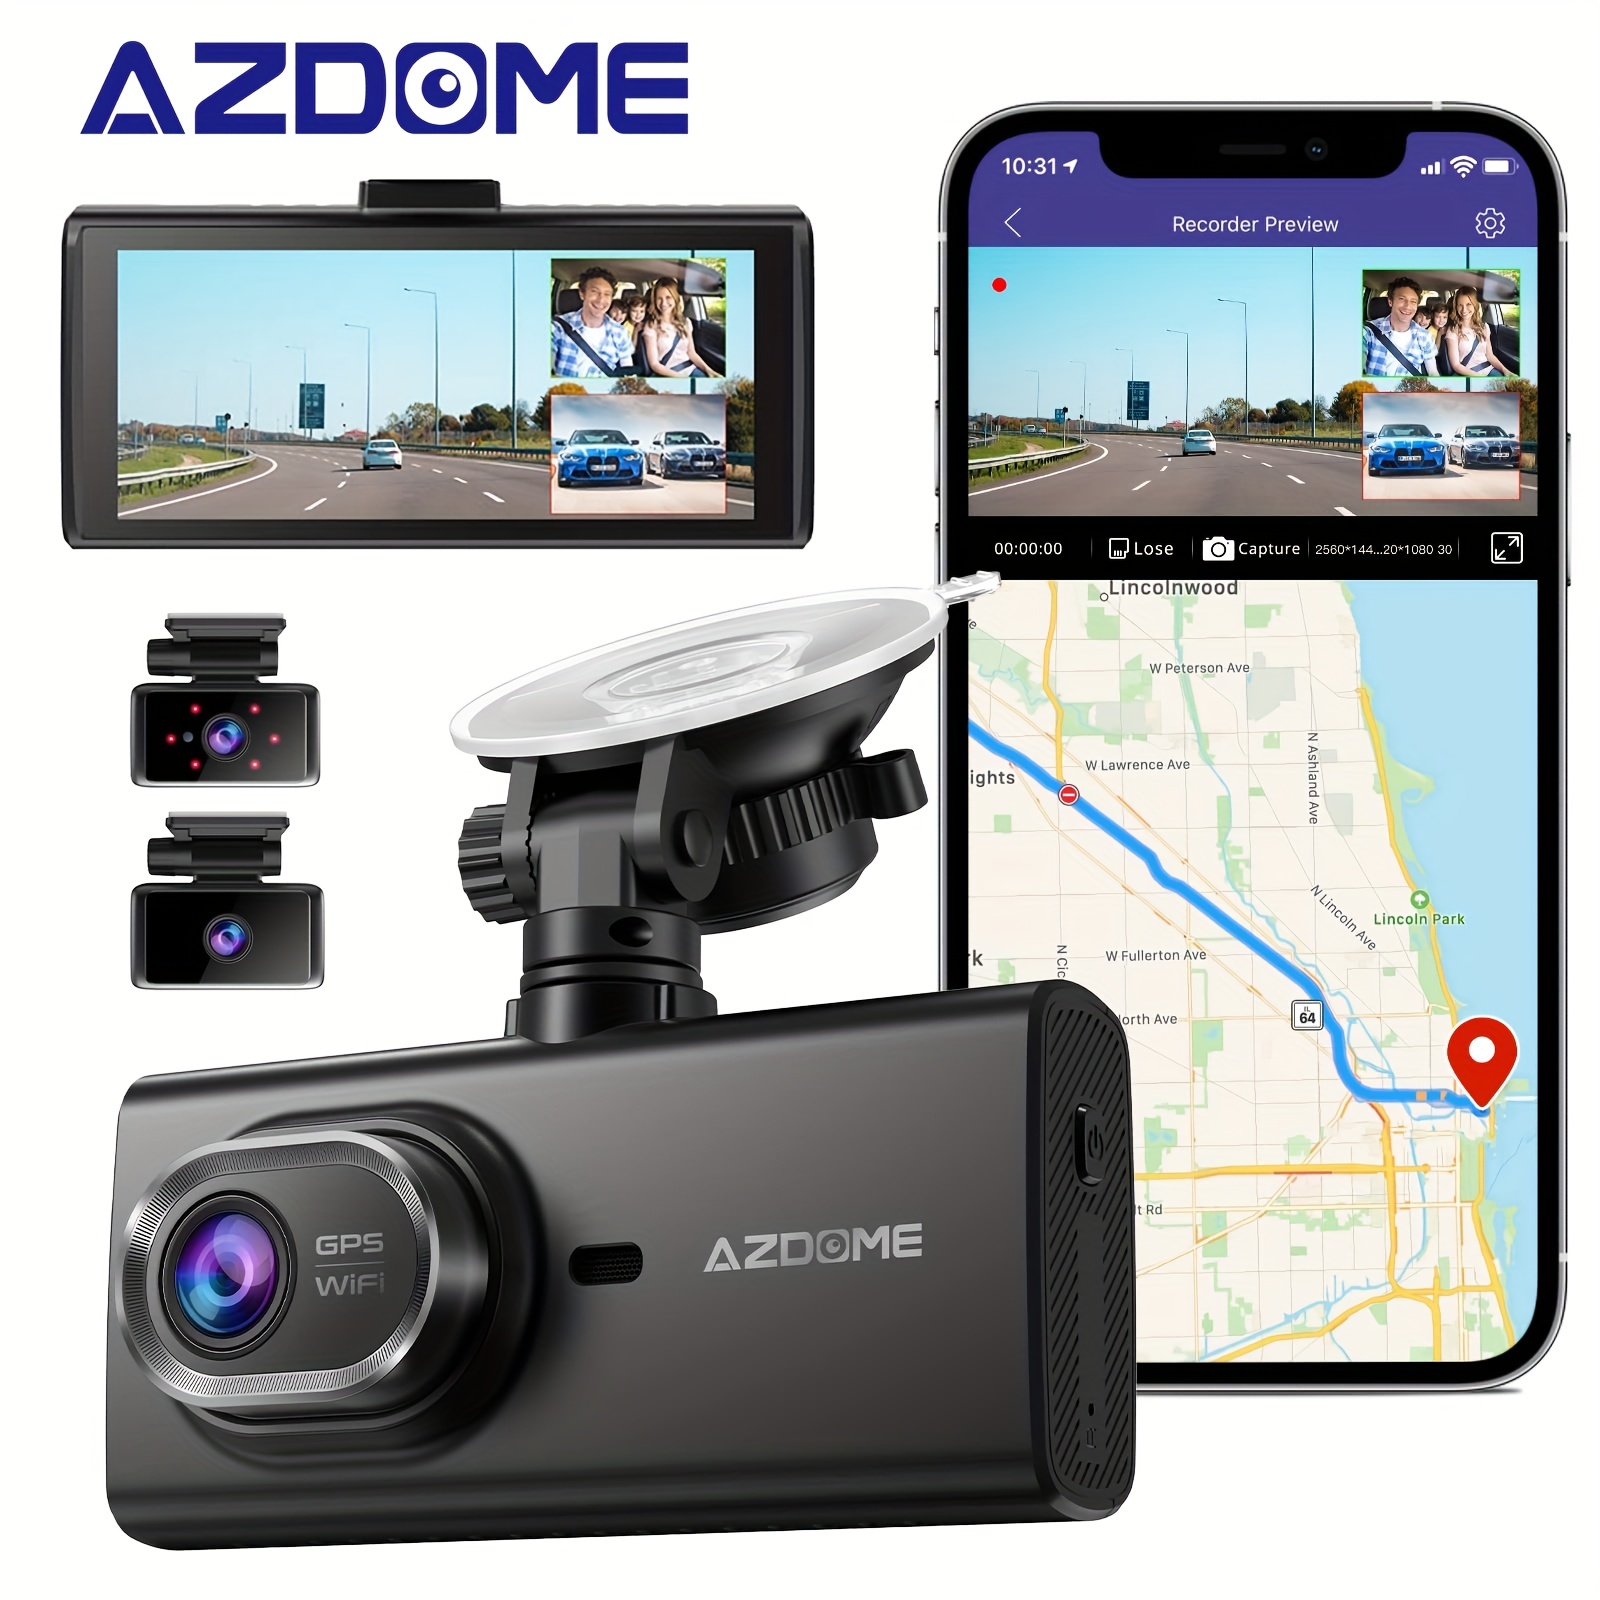 AZDOME M550 Dash Cam Review - 3 Camera Recording! 📷🚗 : r/dashcams